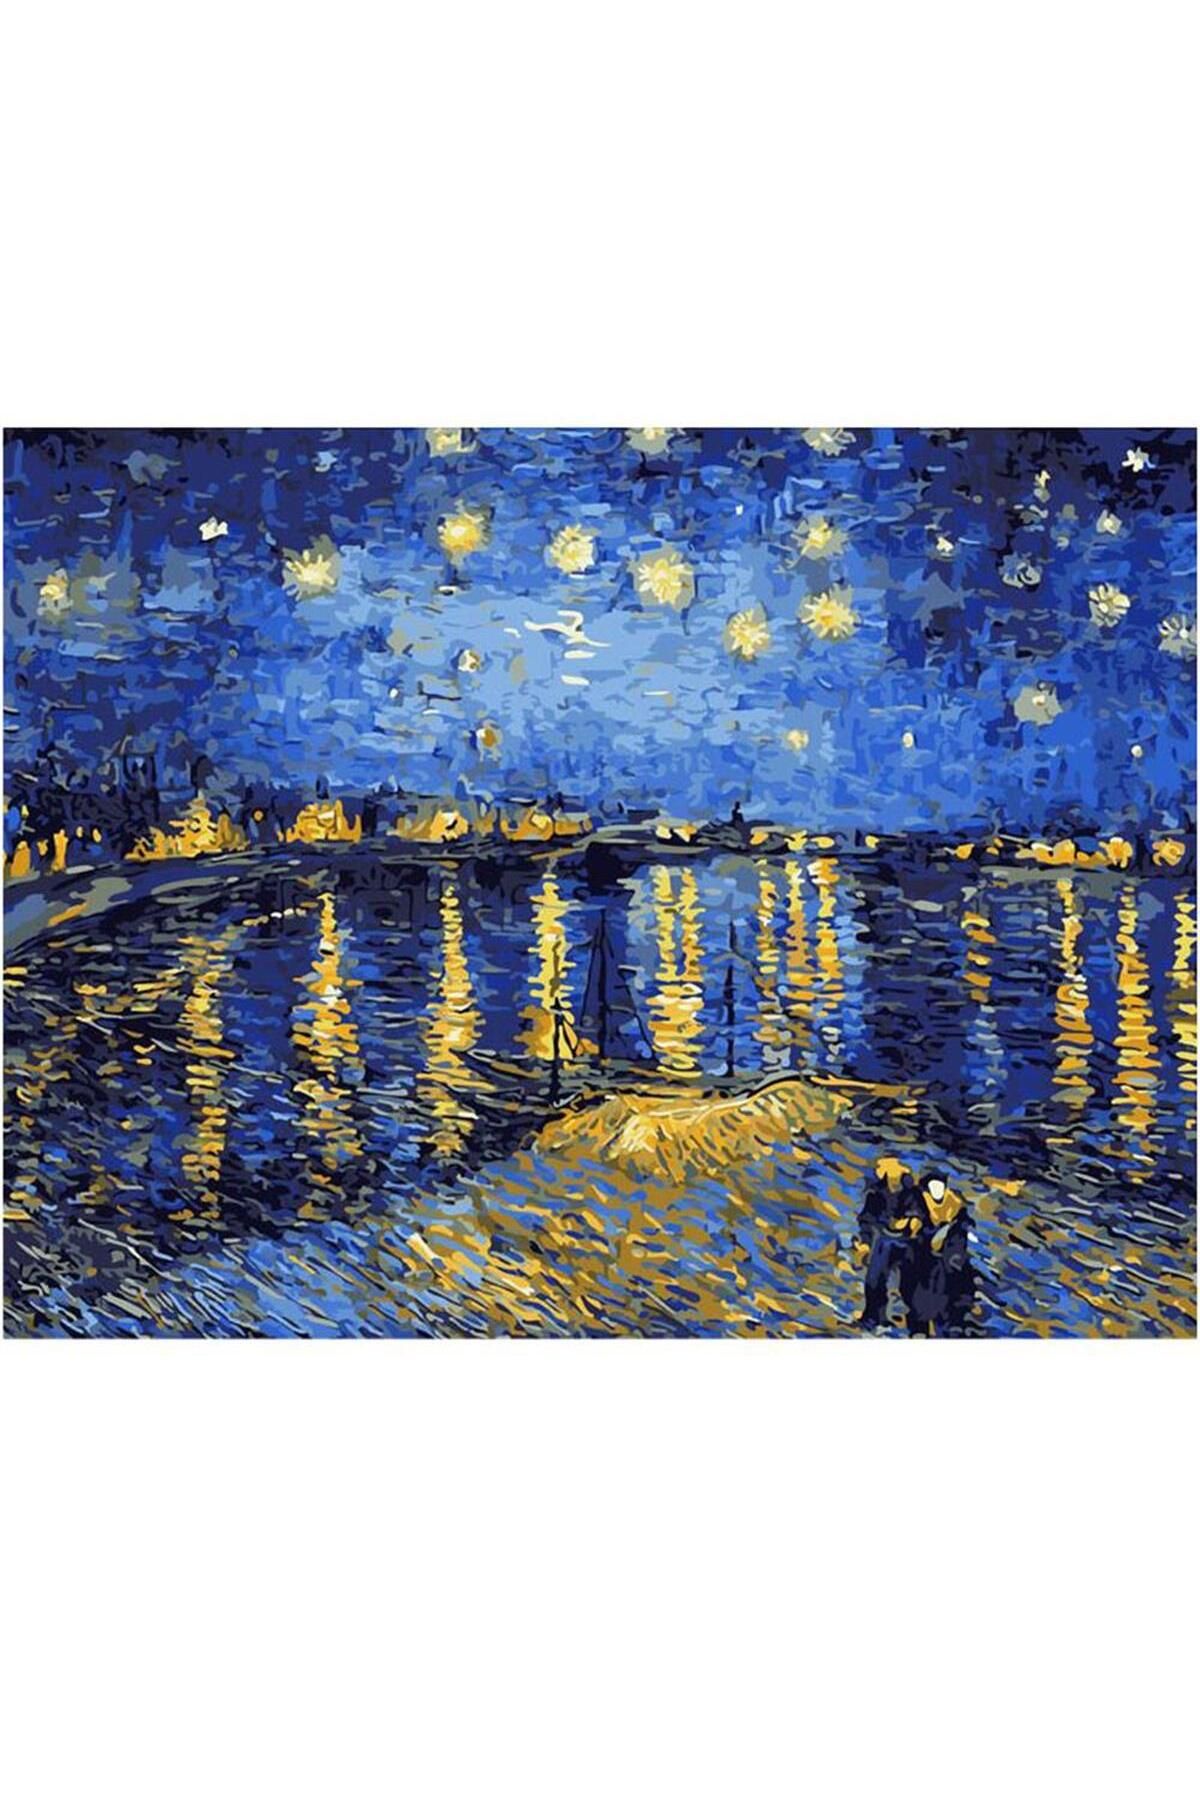 Genel Markalar Sayılarla Boyama Seti Çerçeveli Kasnaklı Ren Nehrinde Yıldızlı Geceler 40 x 50 cm